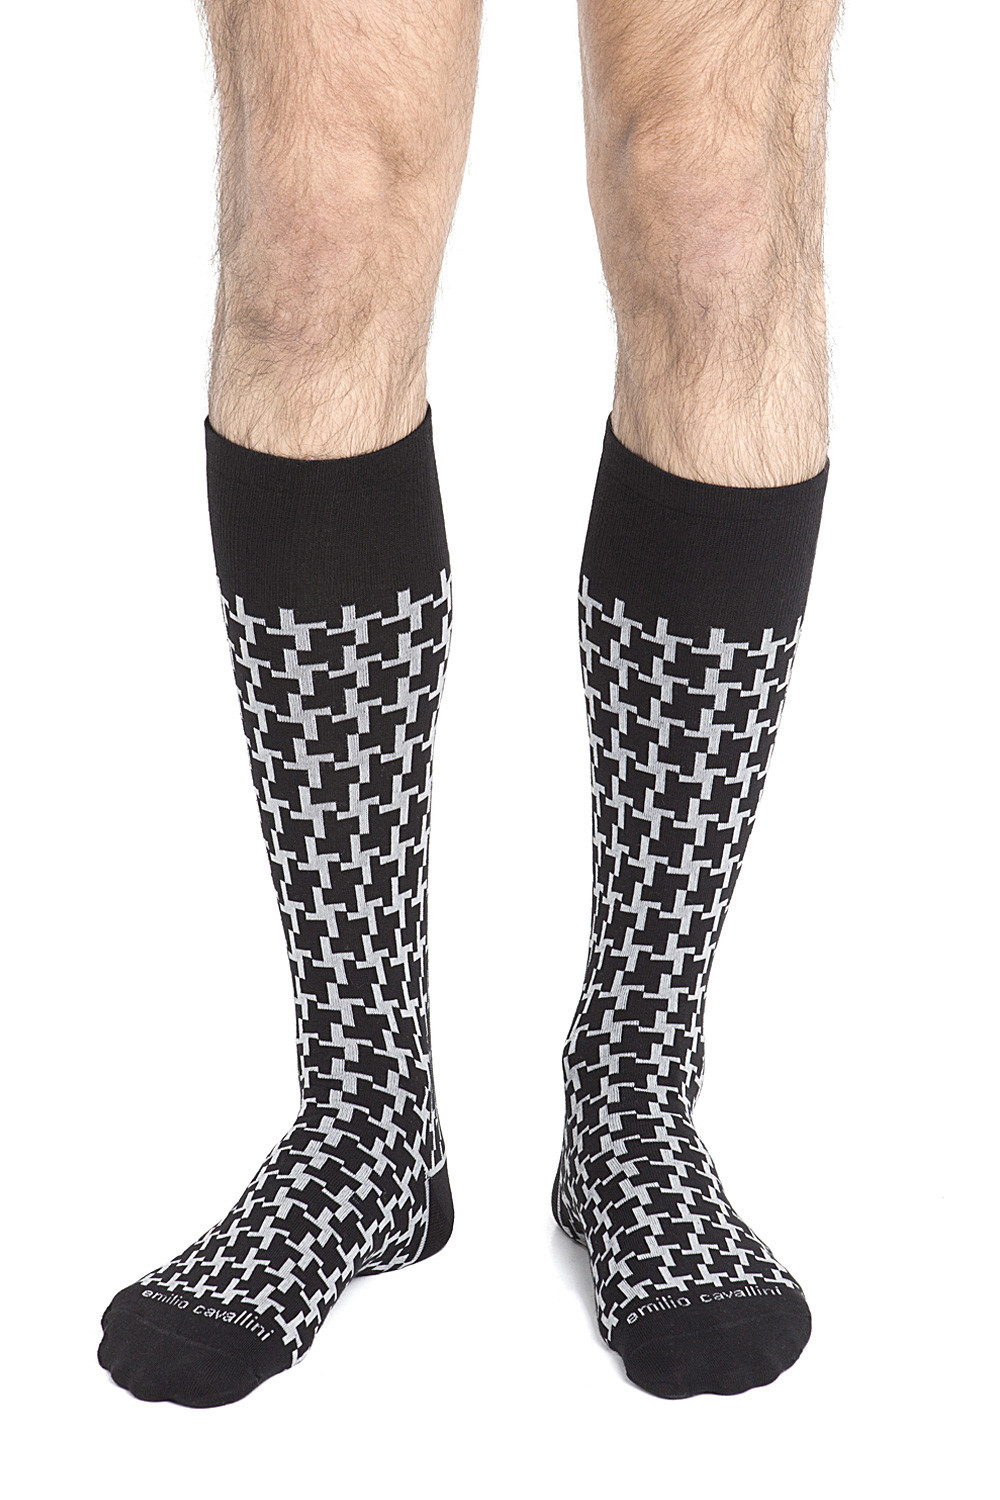 Socks for Men, Cotton & ankle socks